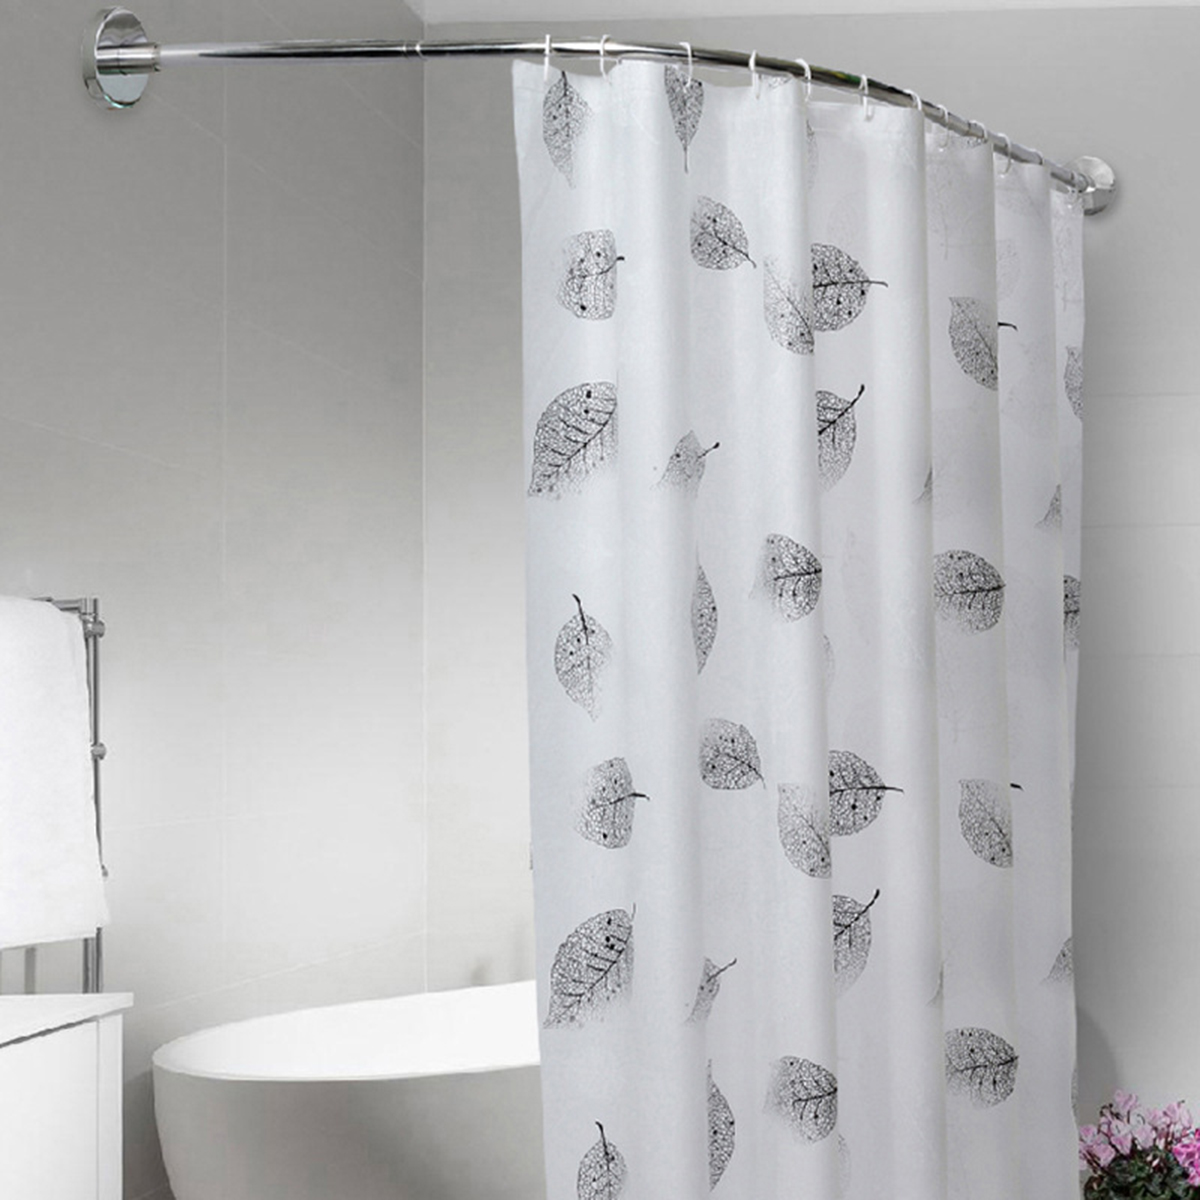 

Adjustable Stainless Steel Shower Curtain Rod Curved Pole Bathtub Hooks